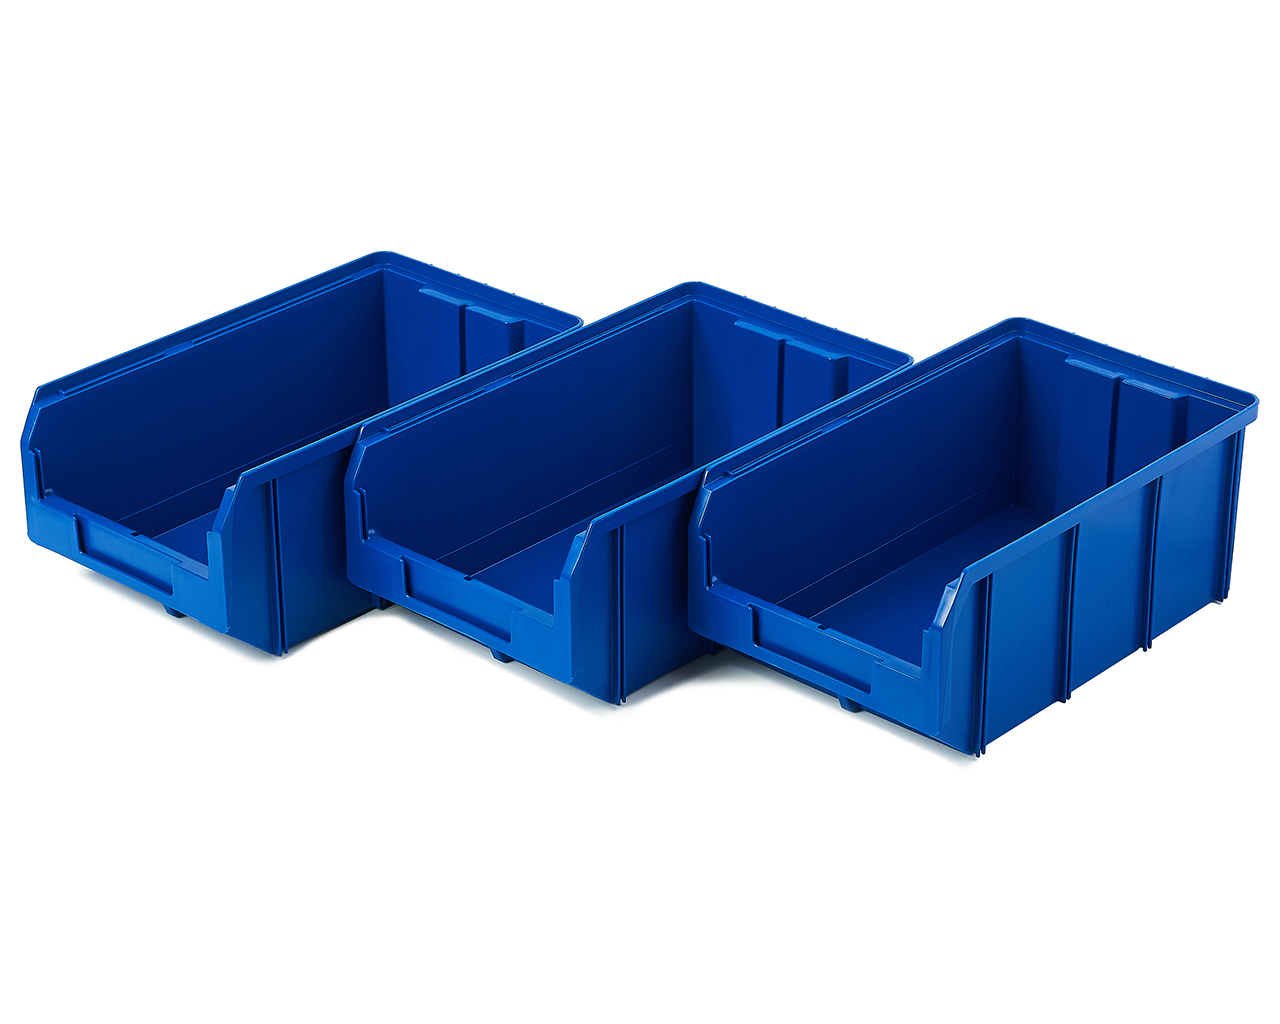 Пластиковый ящик Стелла-техник V-3-К3-синий , 342х207х143мм, комплект 3 штуки косметичка на молнии наружный карман синий